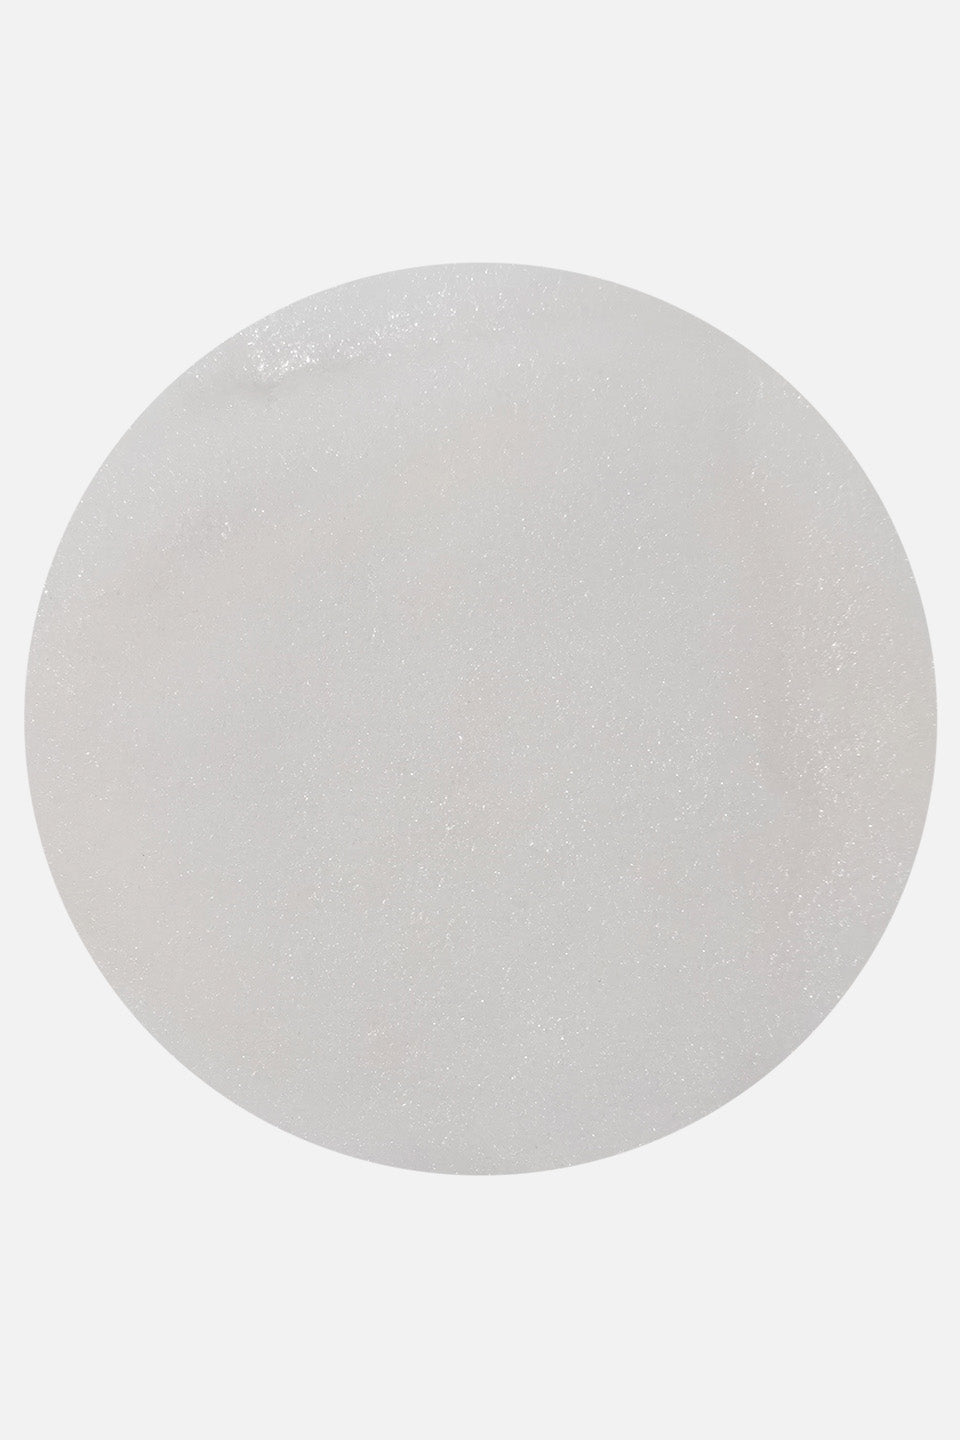 Polvere acrilica bianca Polywhite 45 g